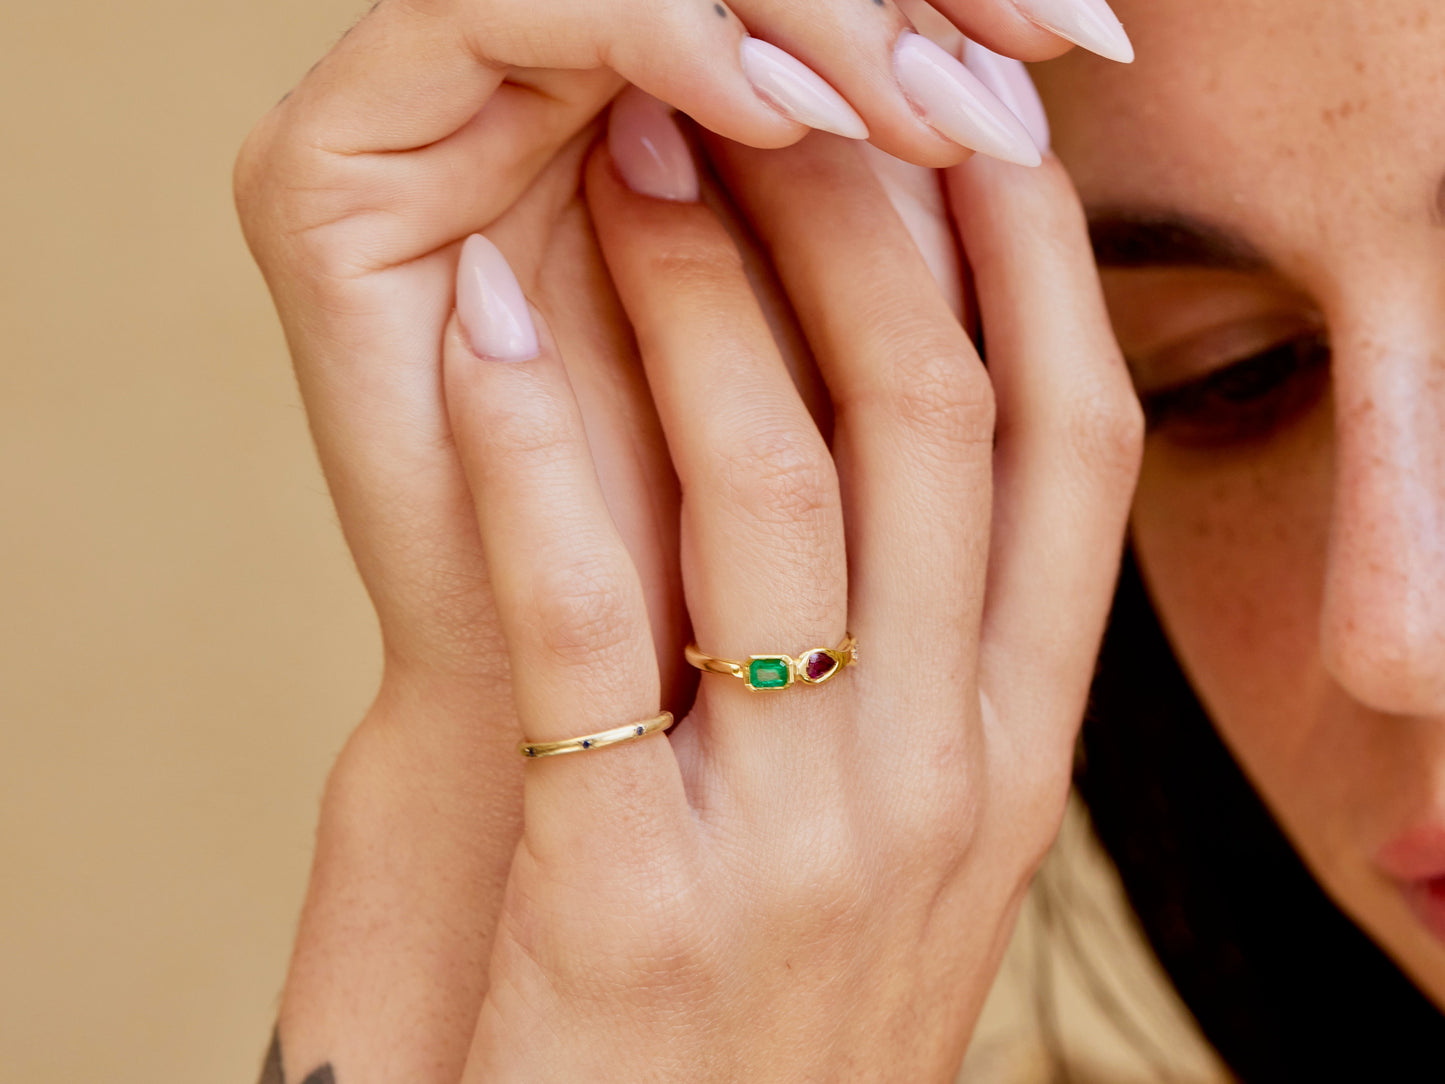 Asymmetric Ruby Emerald Ring